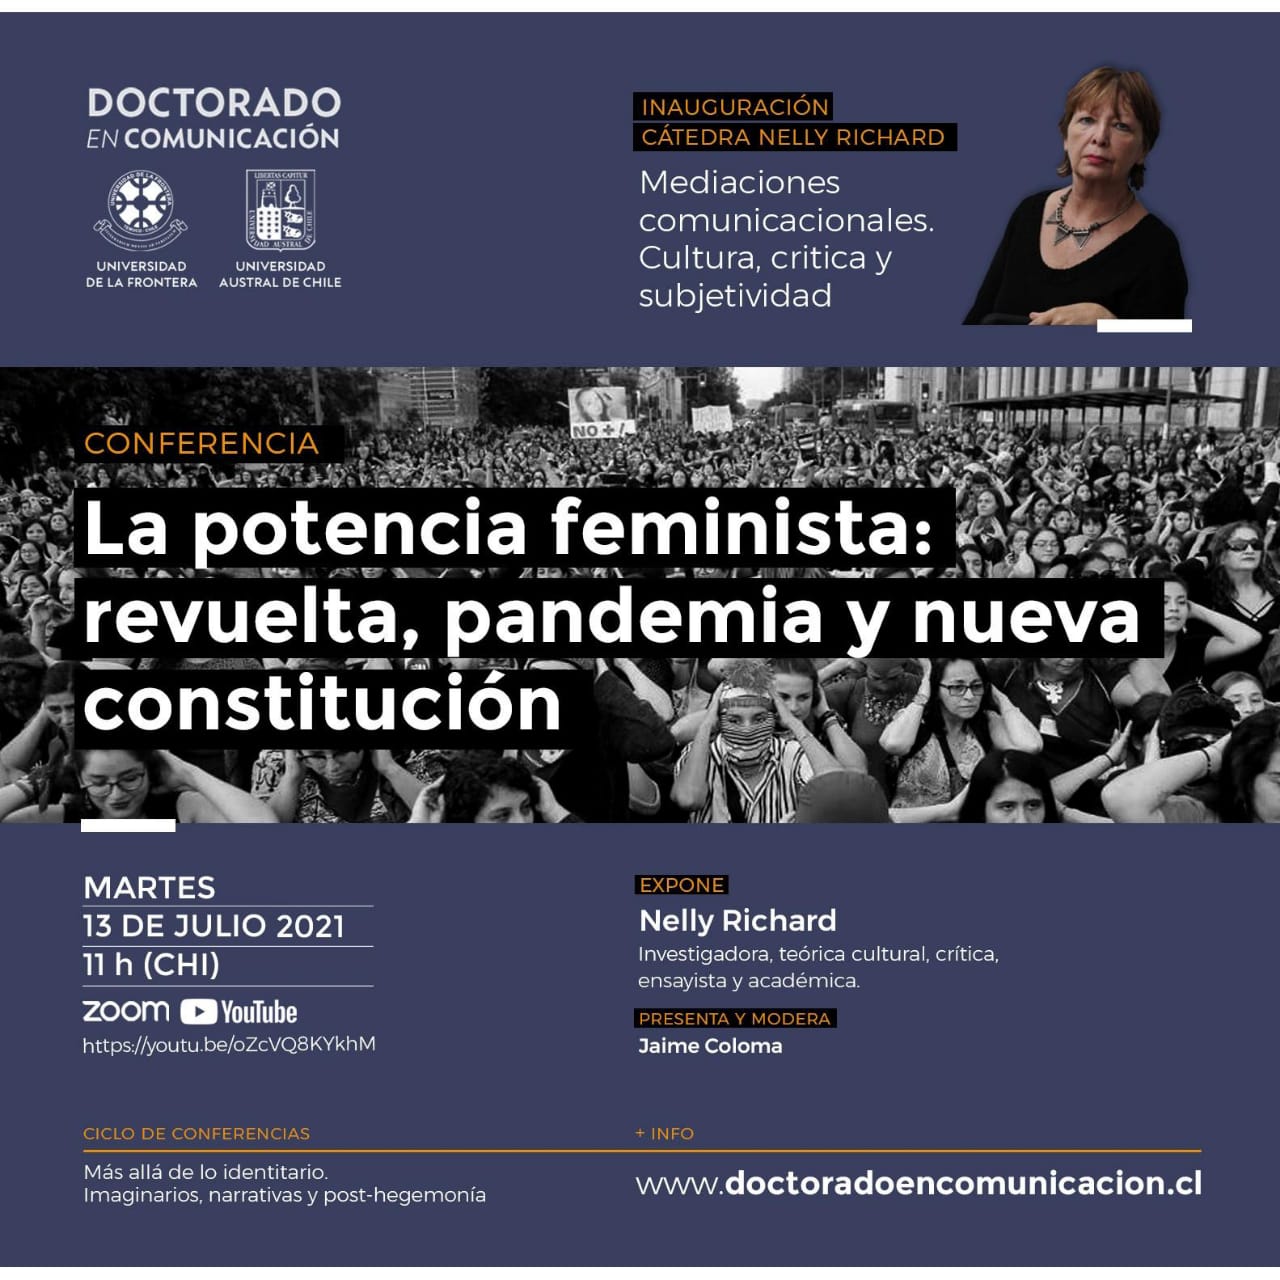 La potencia feminista: pandemia, revuelta y nueva Constitución